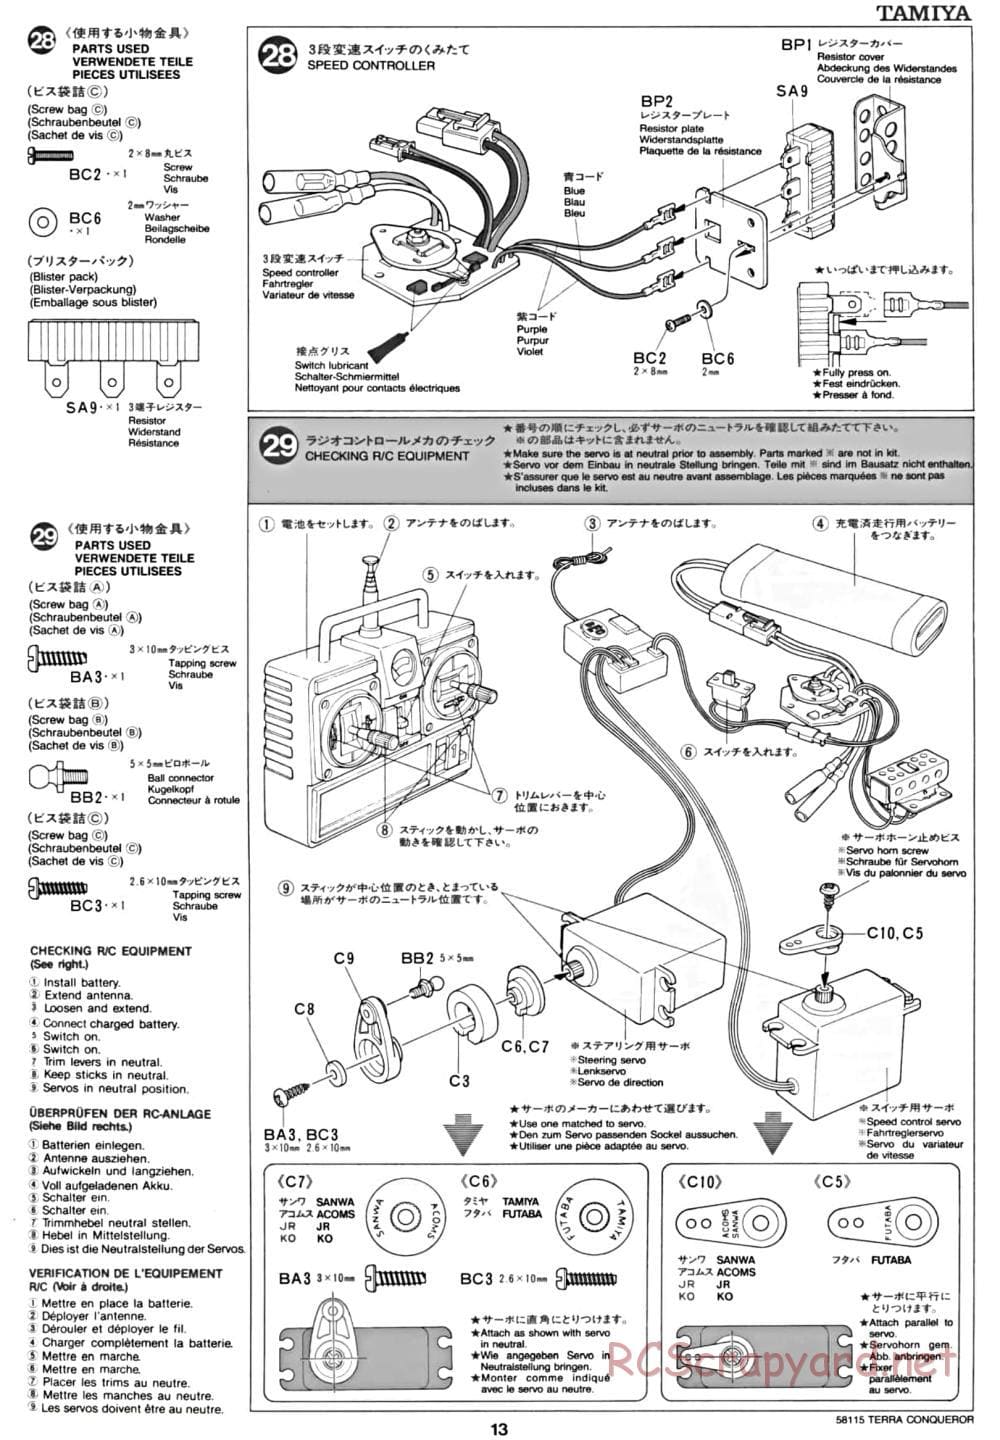 Tamiya - Terra Conqueror Chassis - Manual - Page 13